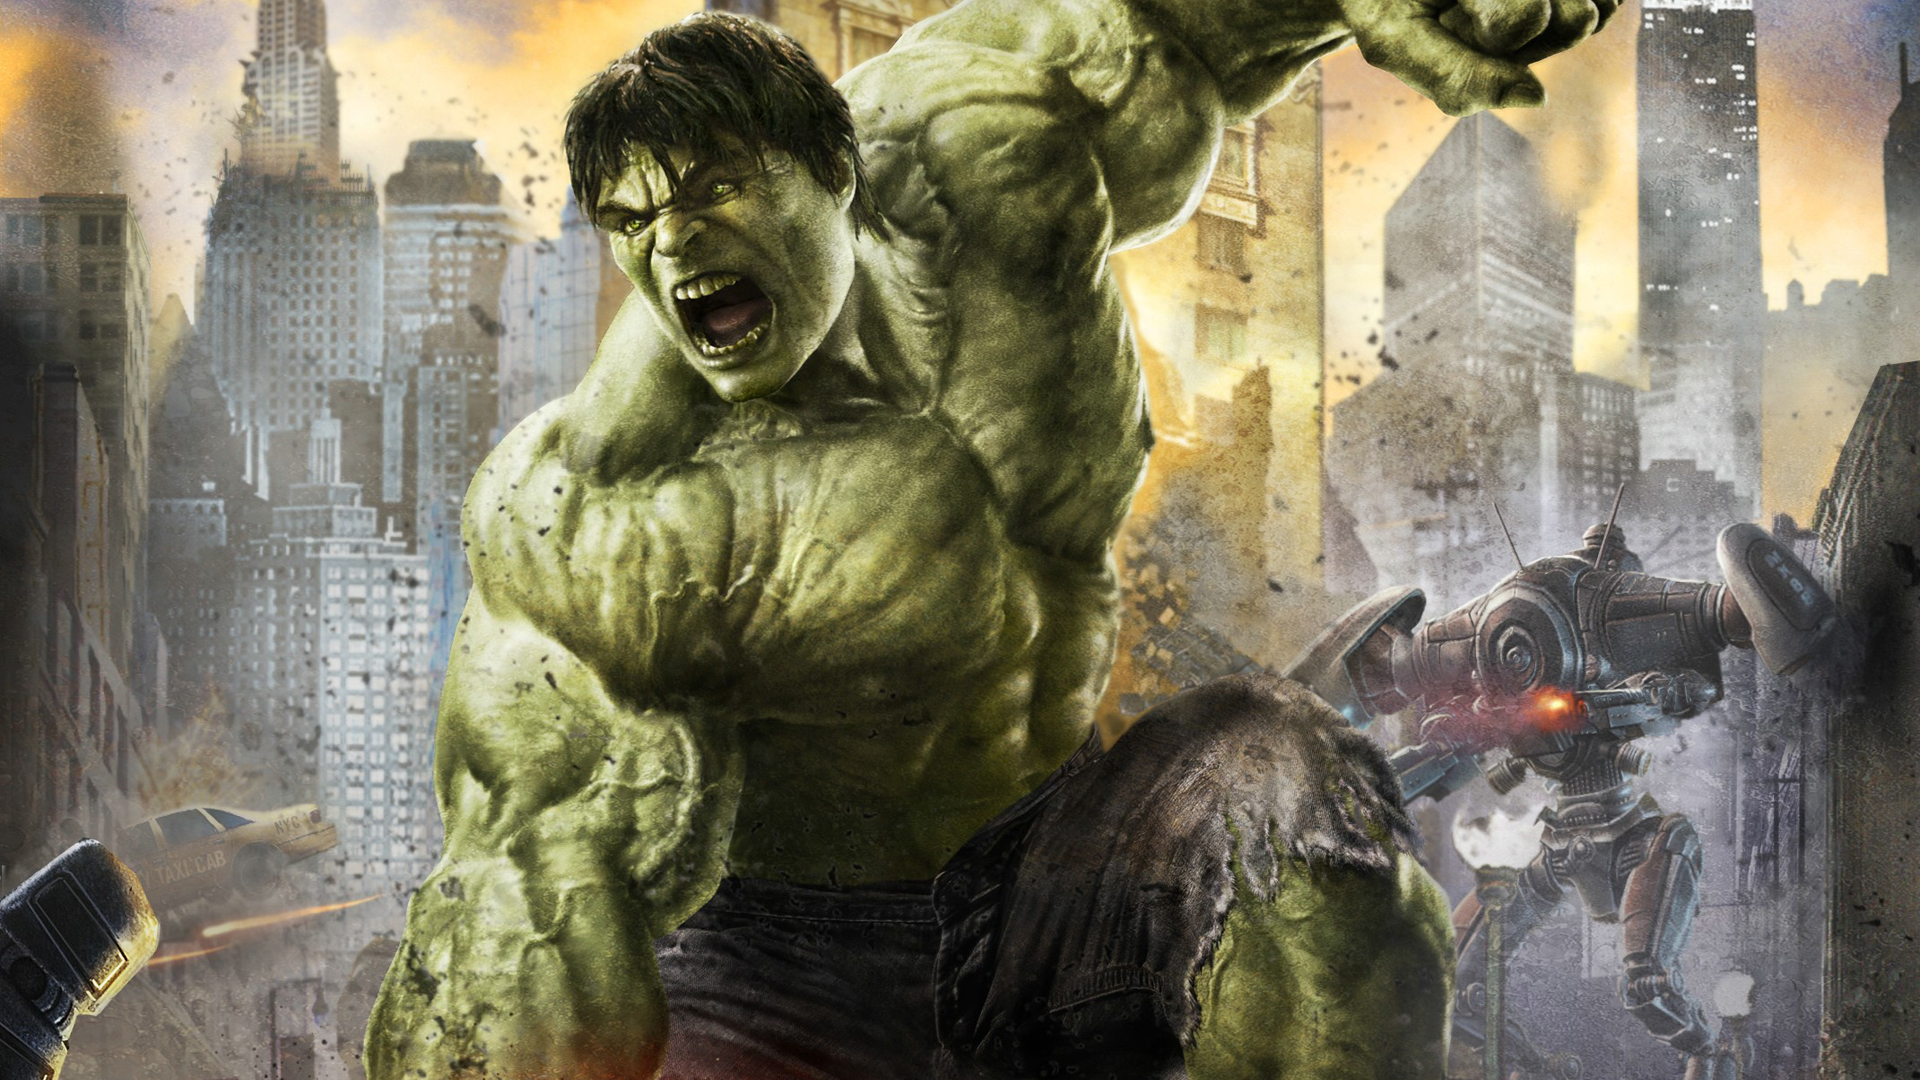 Hq Incredible Hulk Wallpaper